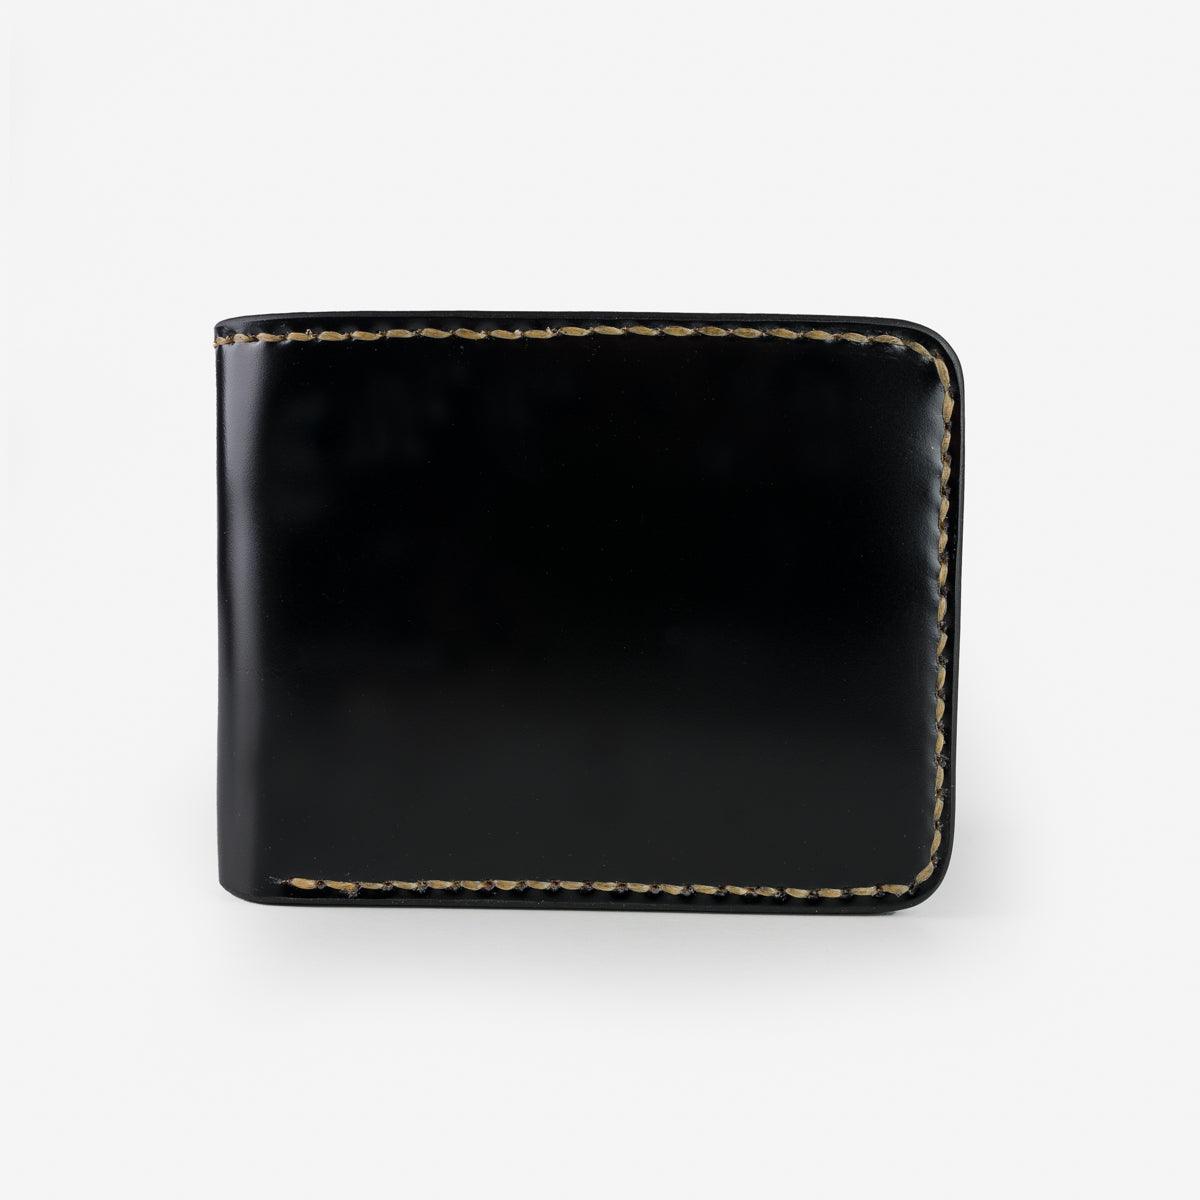 IHG-071-BLK - Slimline Small Shell Cordovan Wallet Black